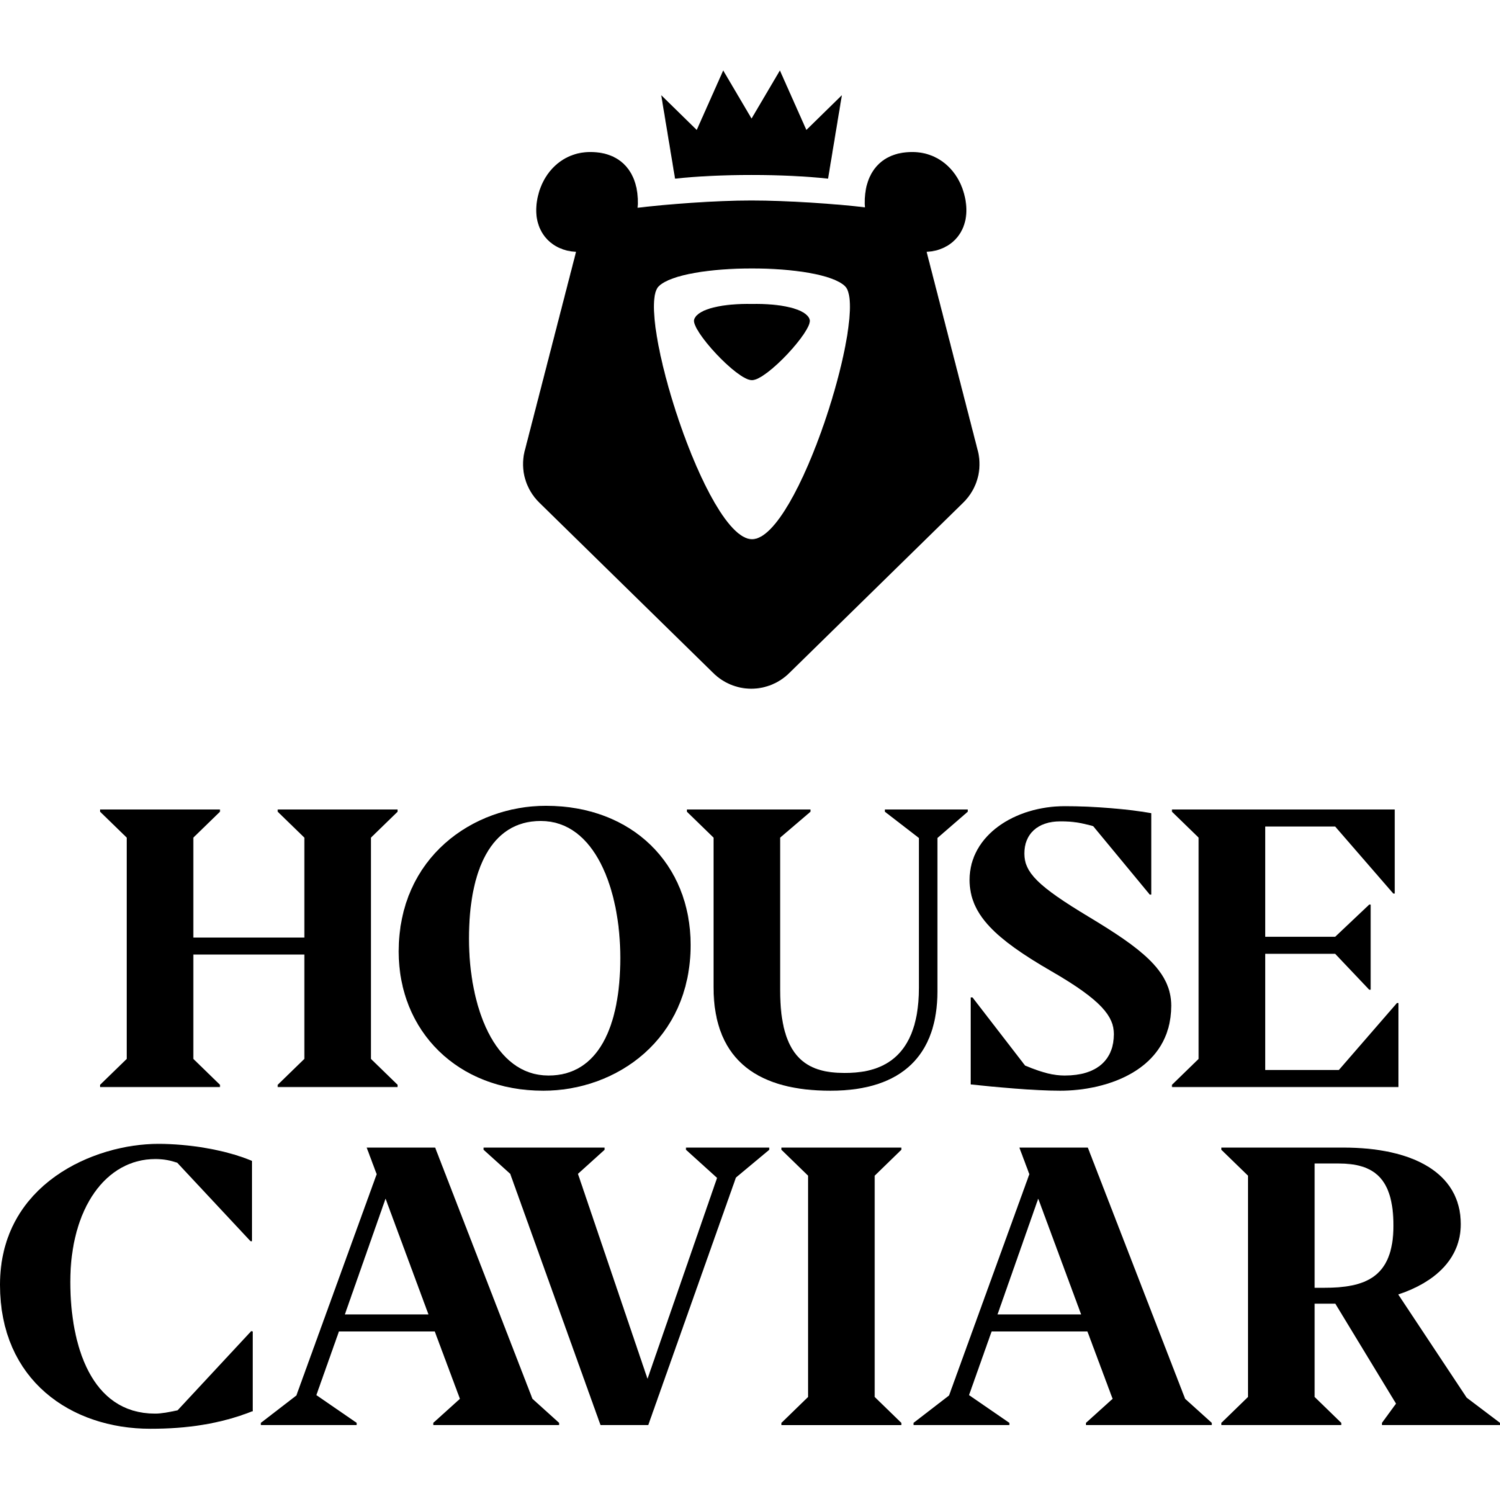 Caviar Logo - House Caviar